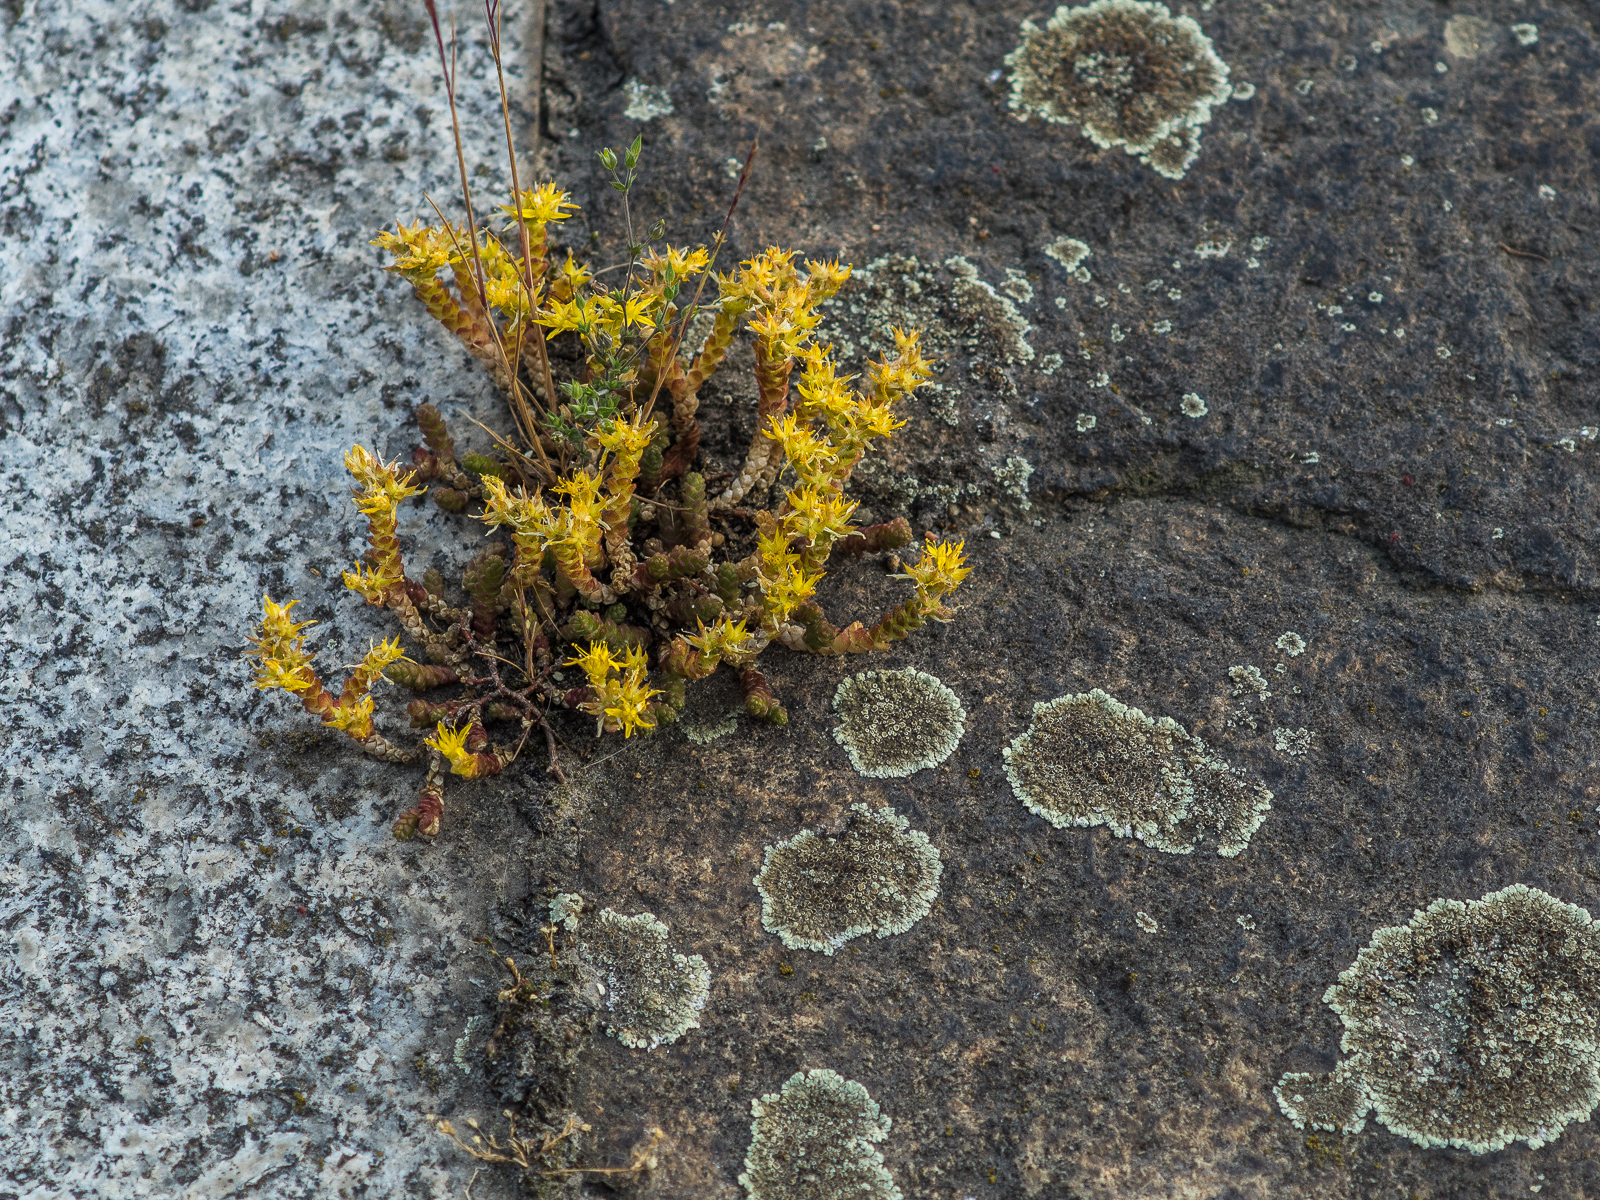 hellgraue und dunkelgraue Steine, mit Flechten bewachsen. Aus der Fuge zwischen den Steinen wächst ein gelbes Kraut.